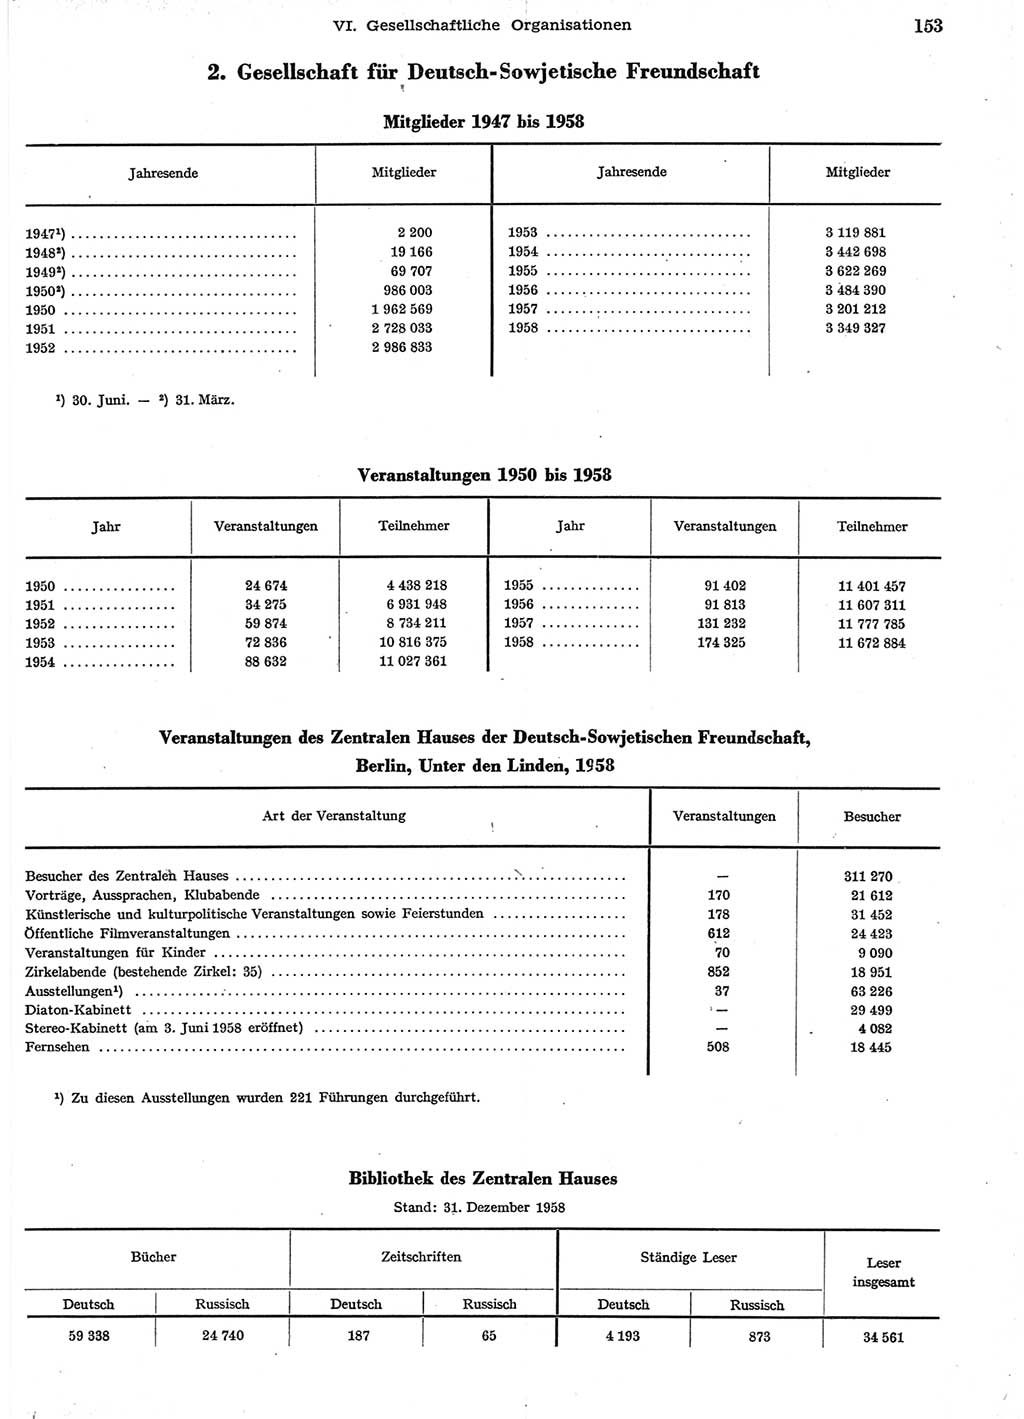 Statistisches Jahrbuch der Deutschen Demokratischen Republik (DDR) 1958, Seite 153 (Stat. Jb. DDR 1958, S. 153)